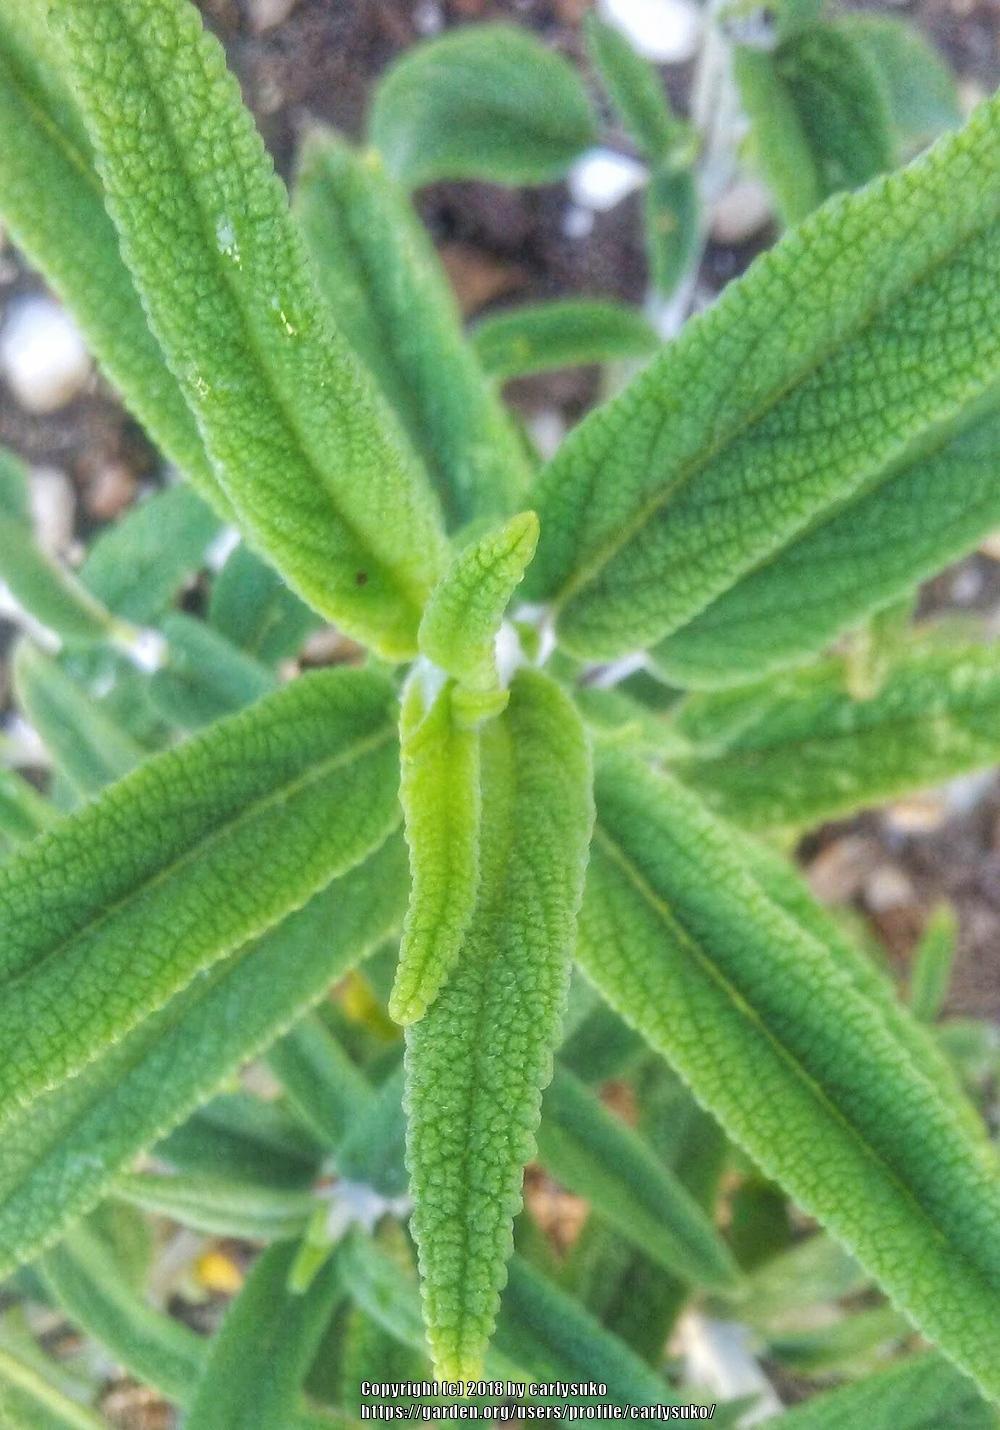 Photo of Mexican Bush Sage (Salvia leucantha 'Santa Barbara') uploaded by carlysuko